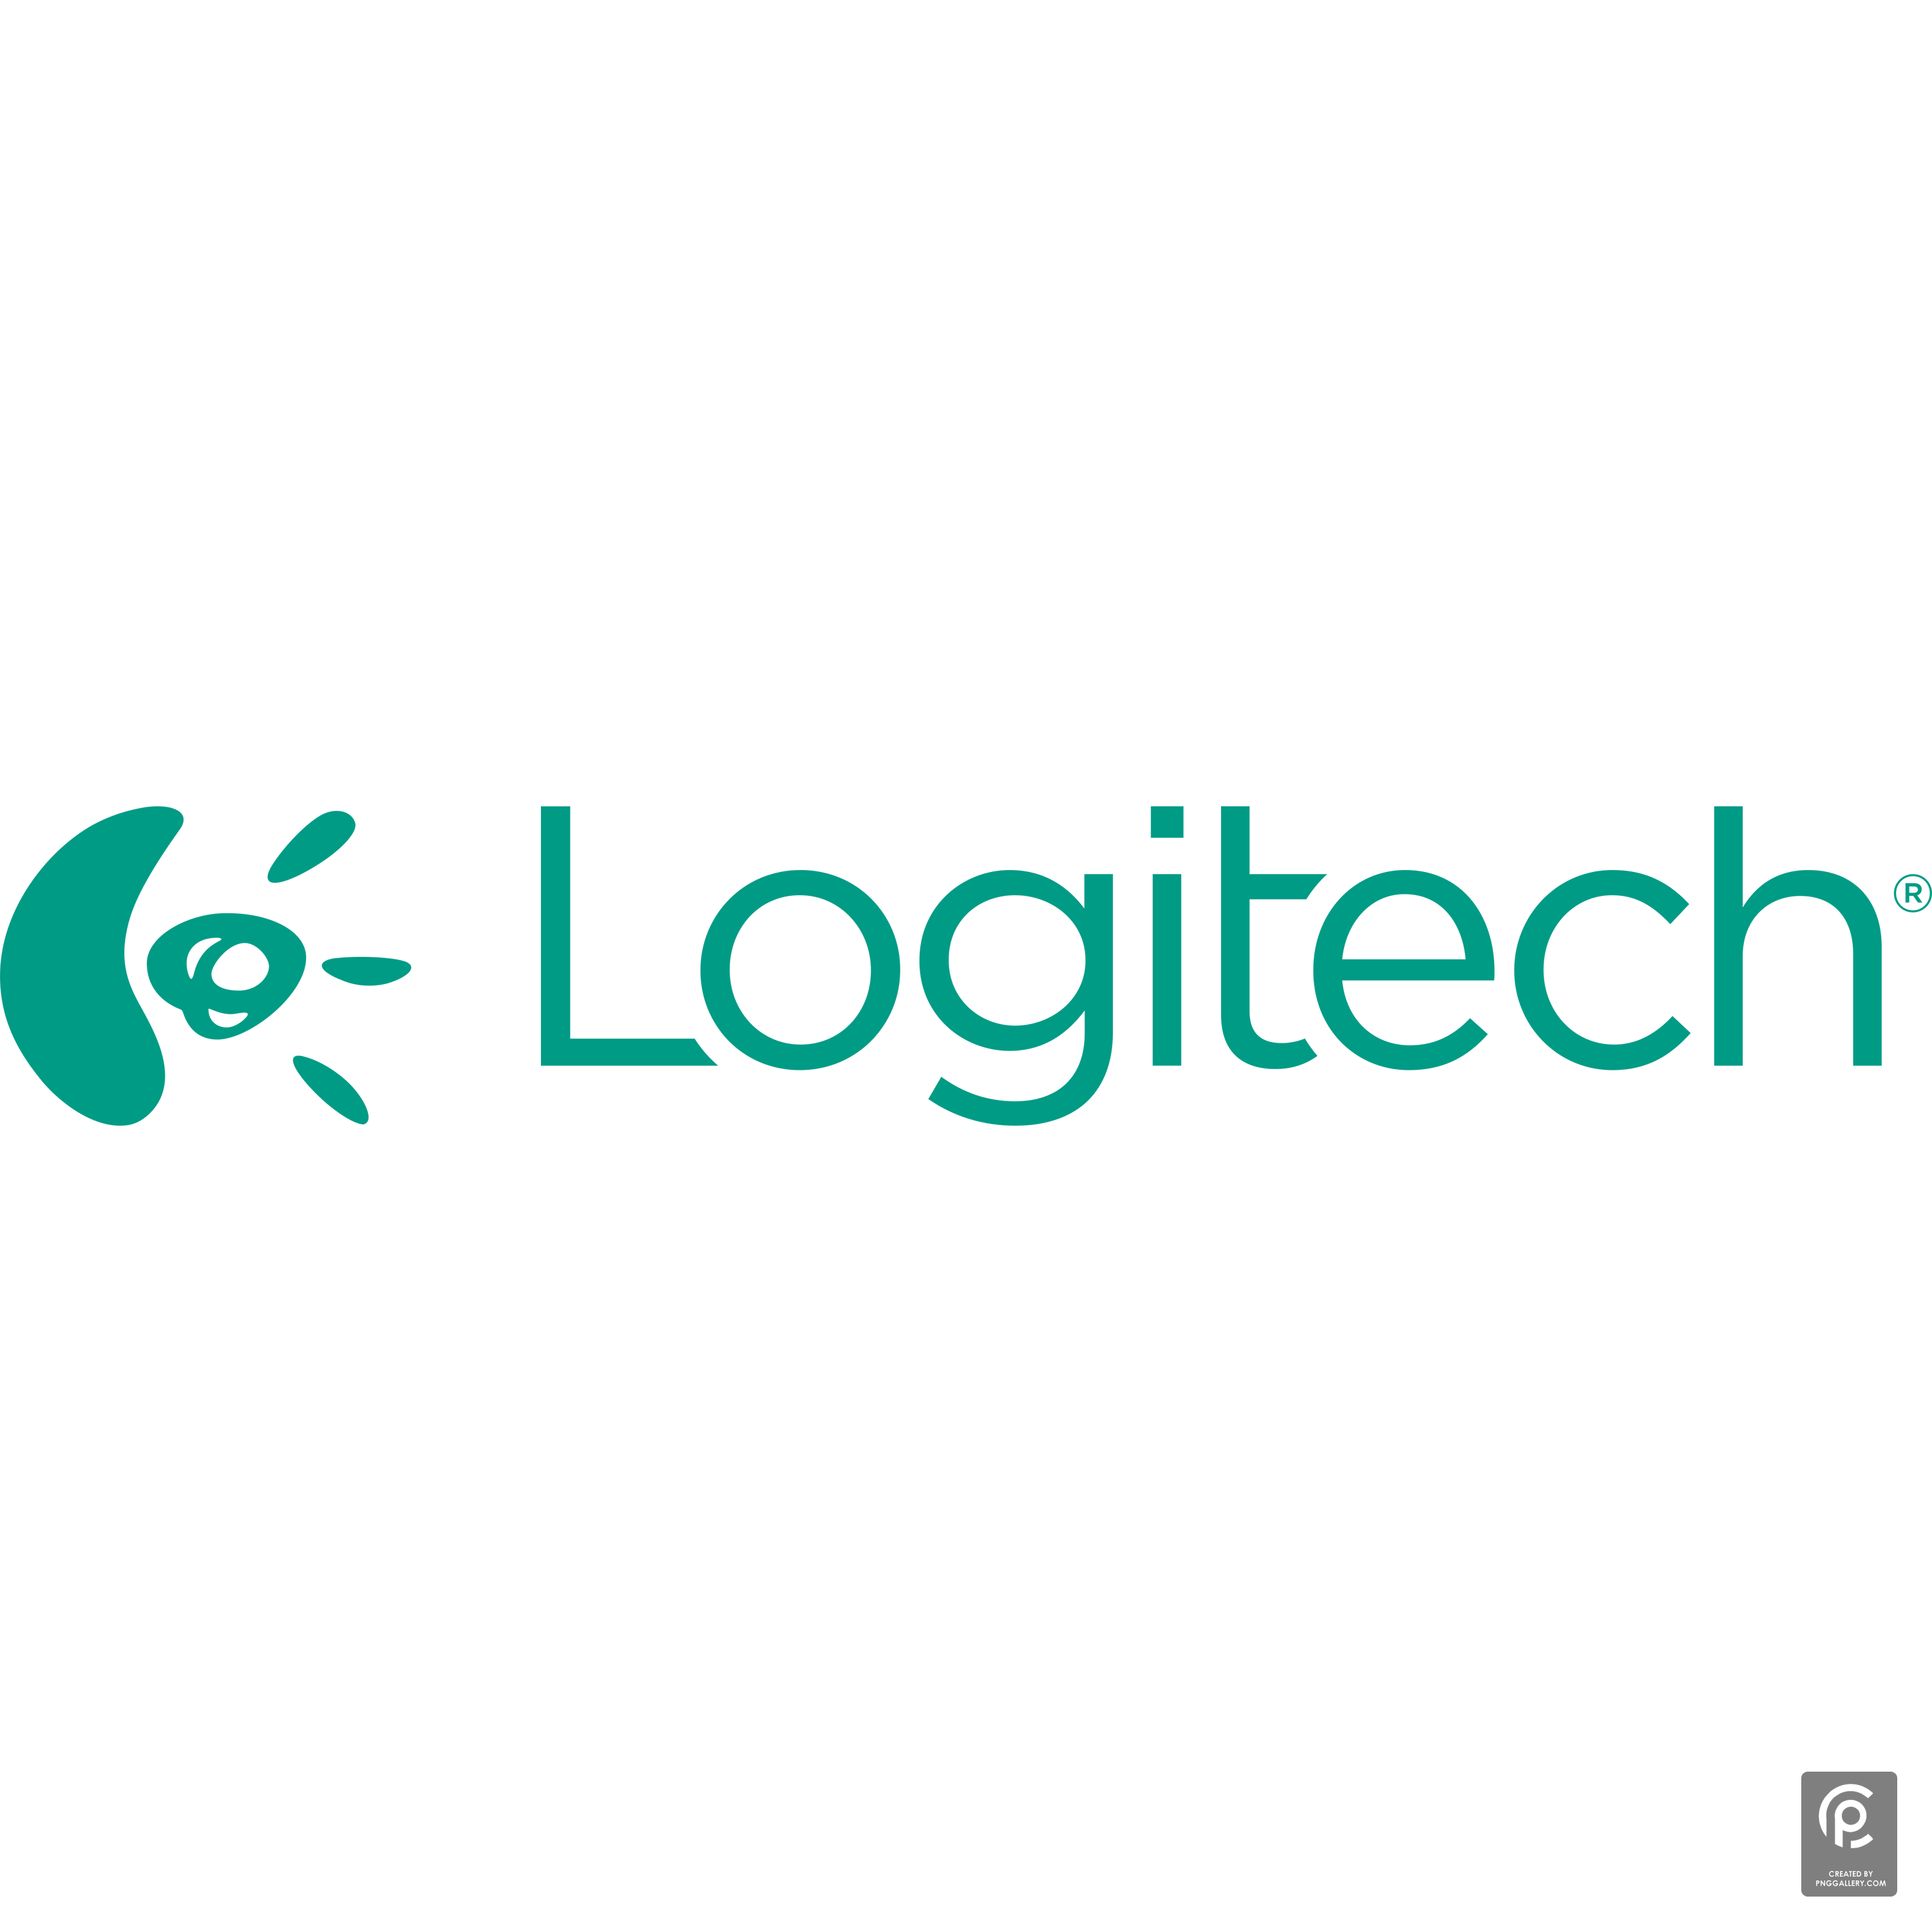 Logitech 2013 Logo Transparent Picture